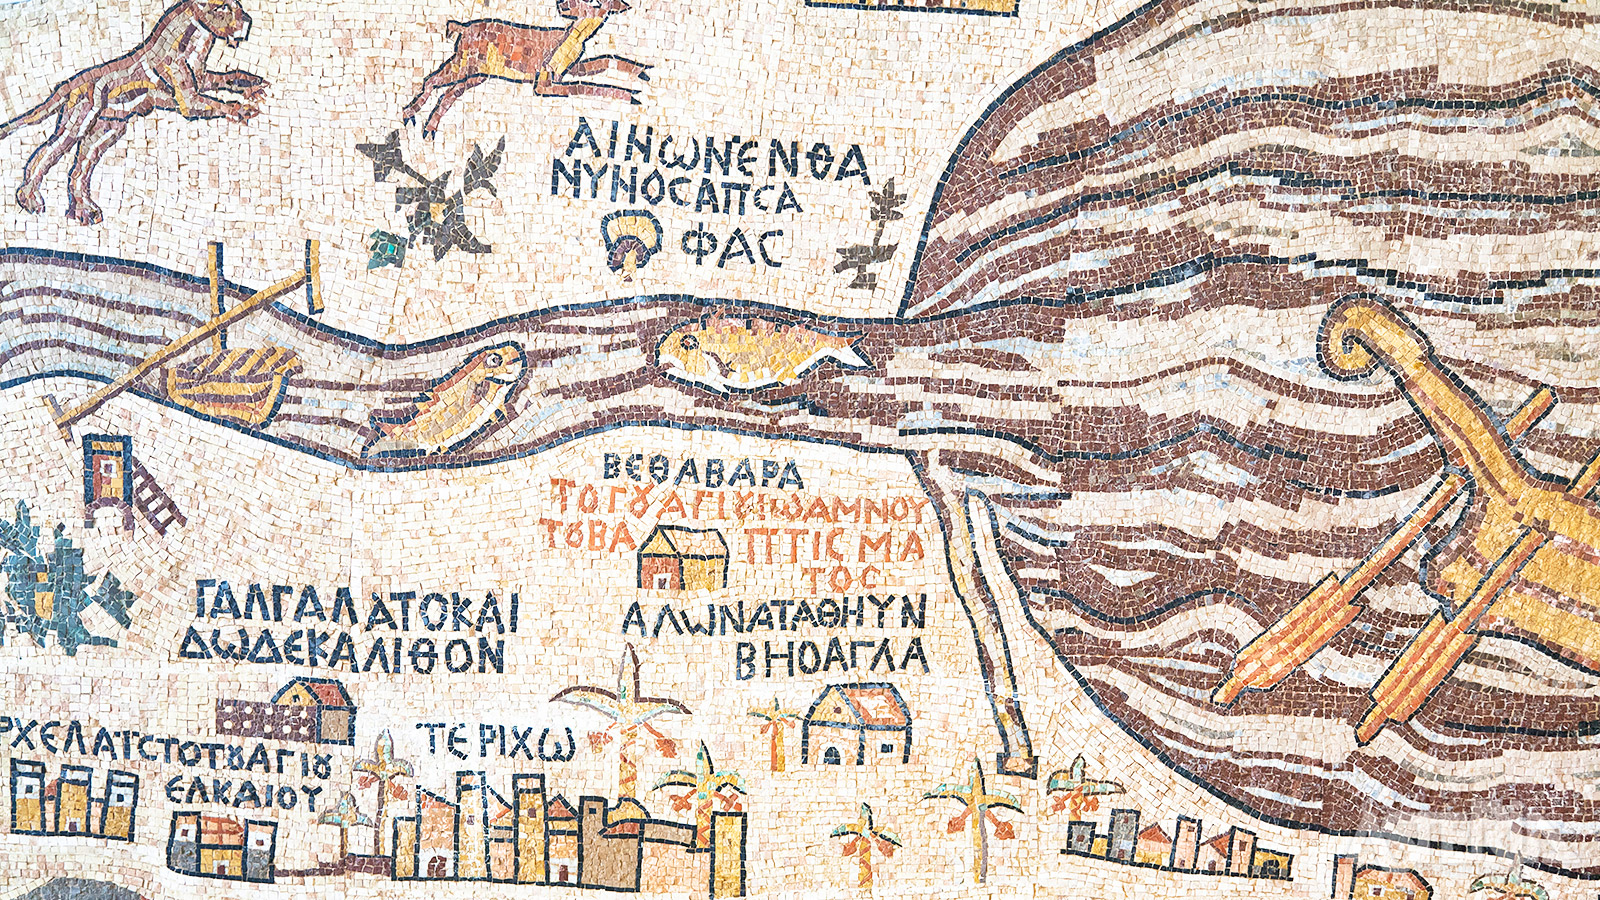 In de Sint Joriskerk in Madaba bevindt zich een 6e eeuwse vloermozaïek die een kaart van Palestina voorstelt